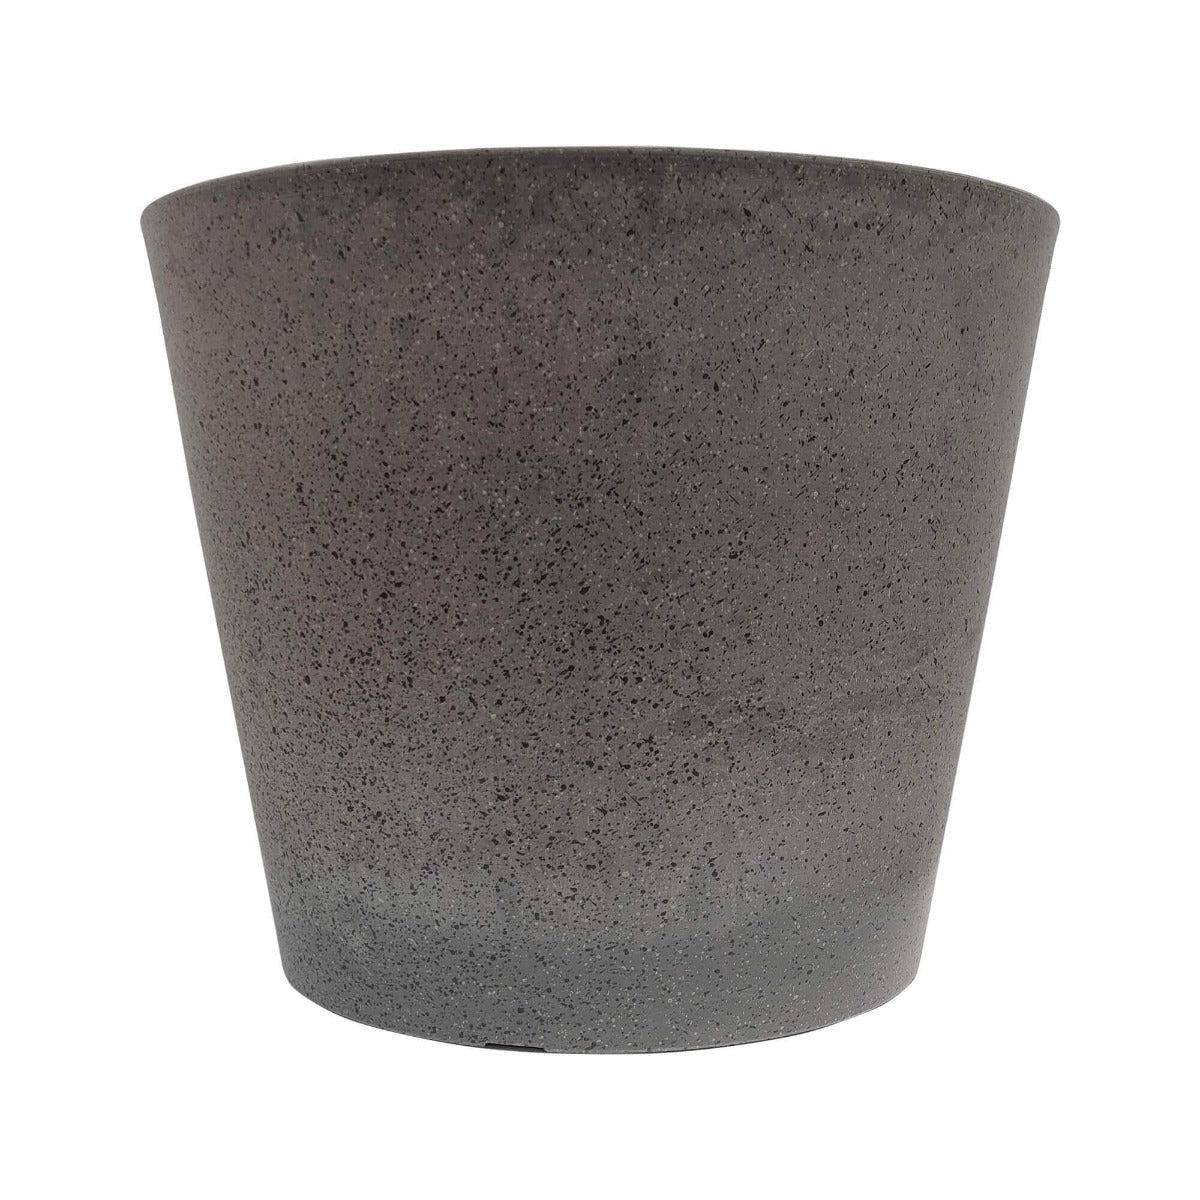 Imitation Stone Grey Pot 40cm Deals499